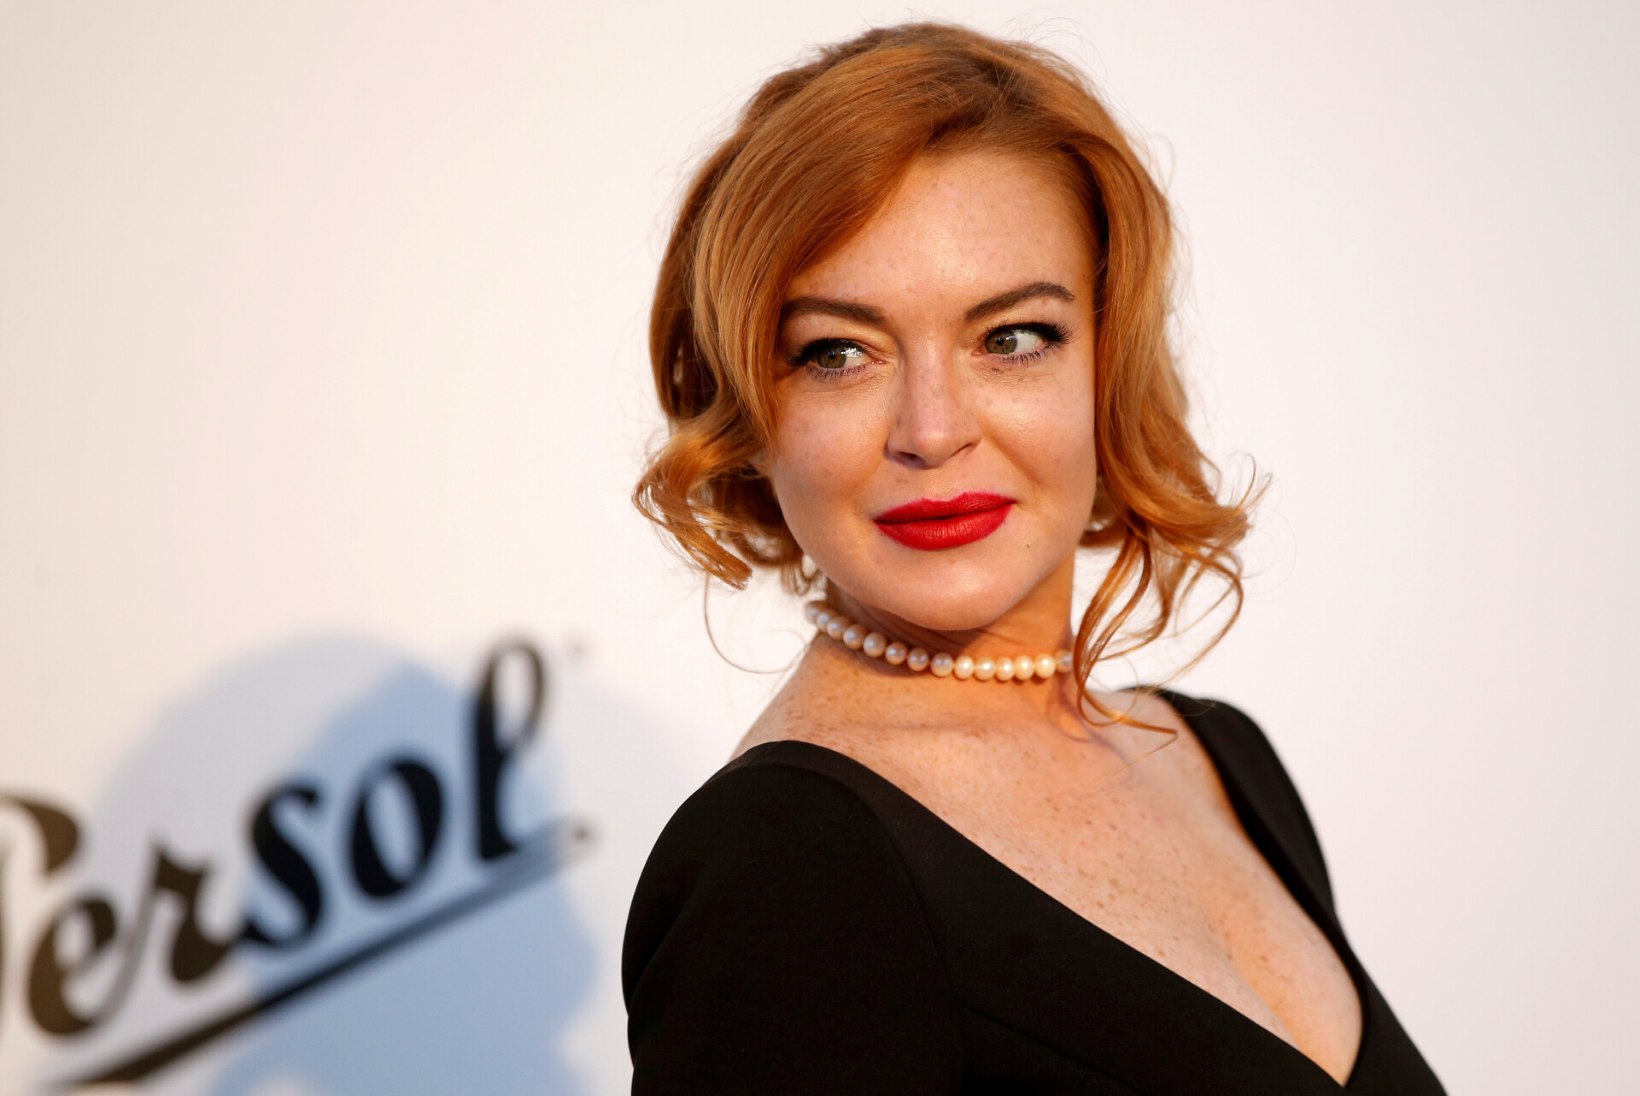 ÕNNESOOVID! Näitleja Lindsay Lohan demonstreeris uhket kihlasõrmust